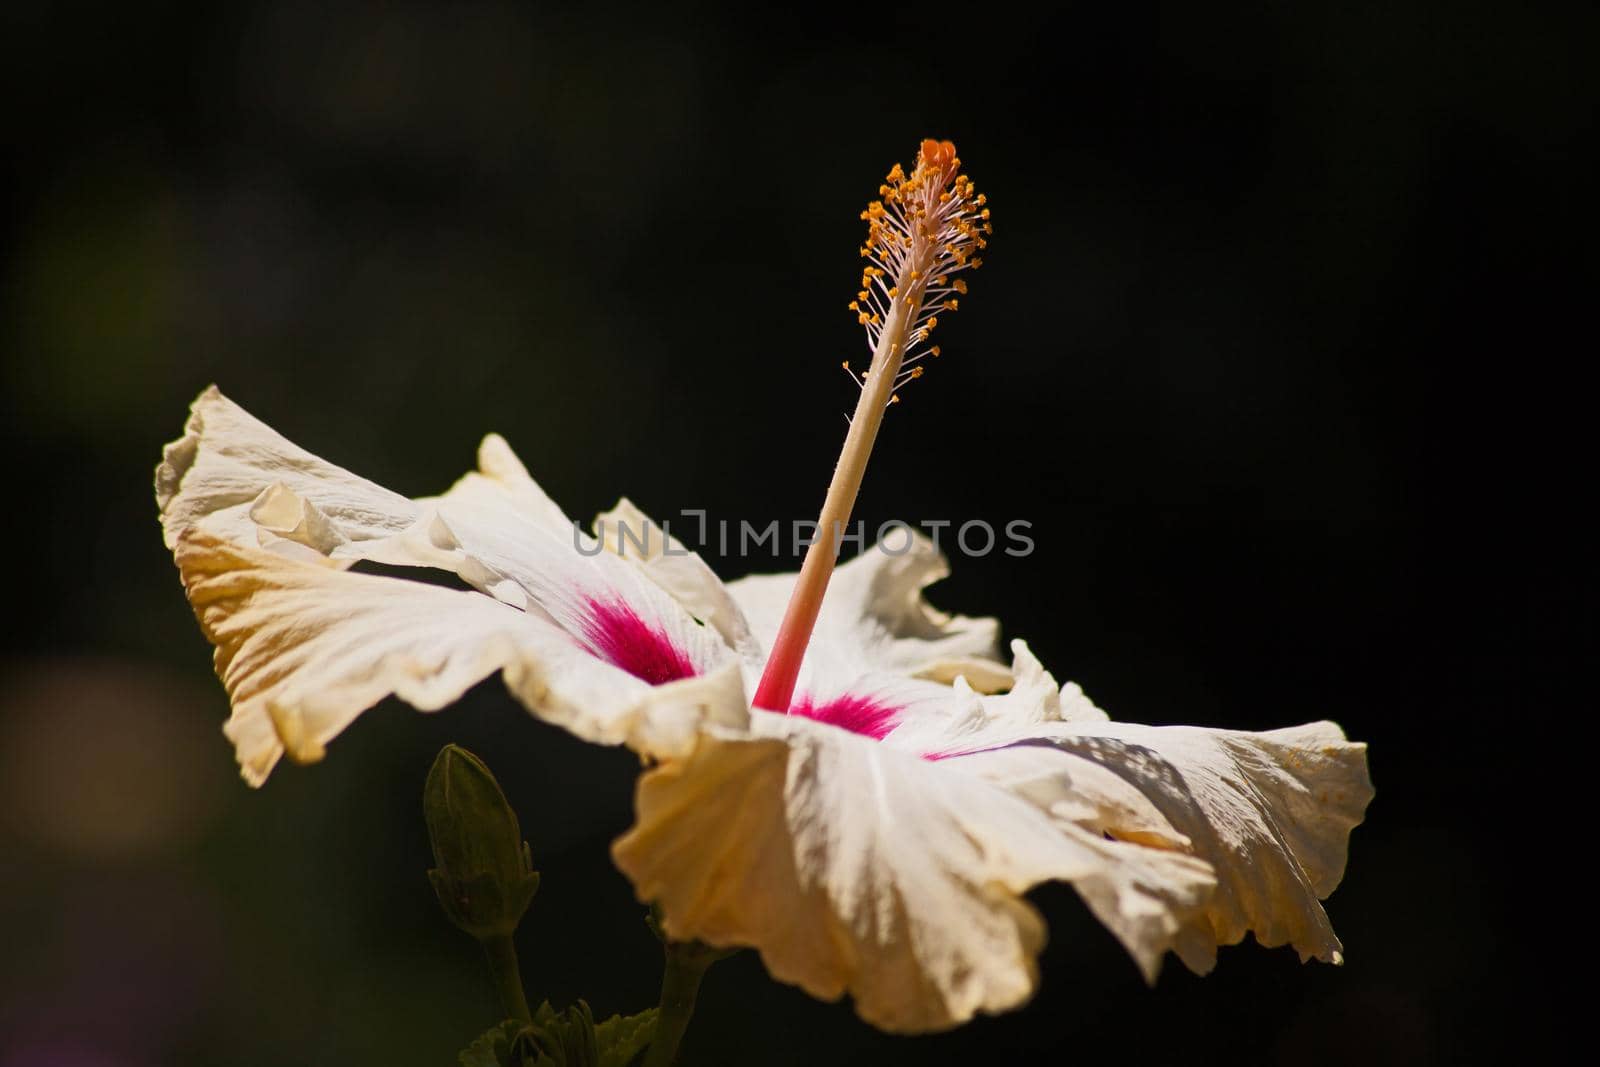 Hibiscus Flower 14686 by kobus_peche